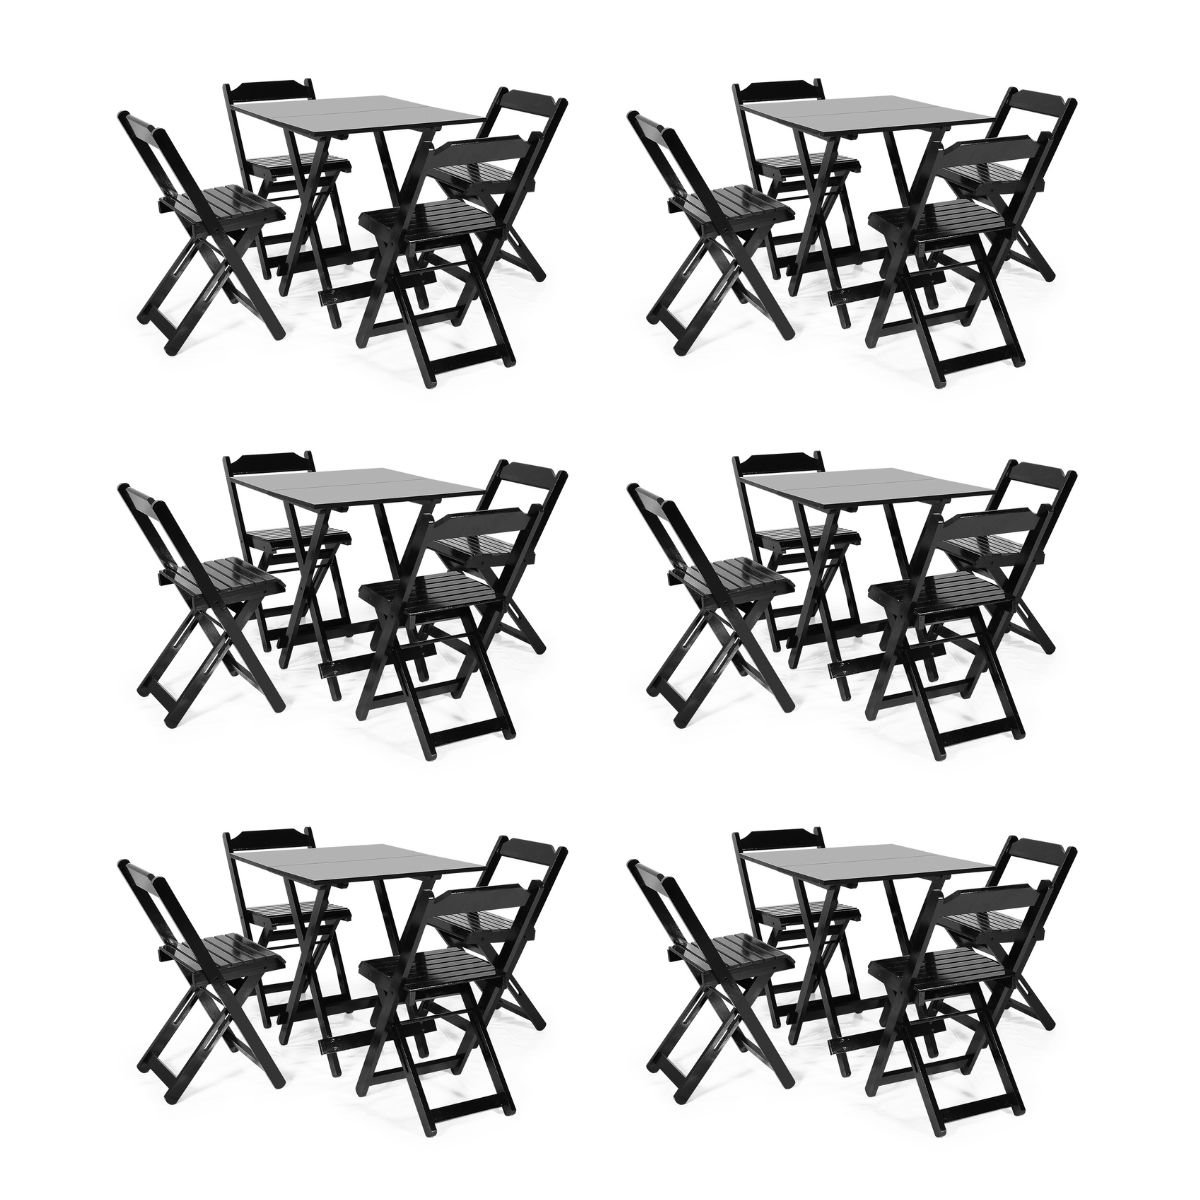 Kit 6 Conjuntos Dobráveis 70 X 70 com 4 Cadeiras Dobráveis Preto - Móveis Britz - 1